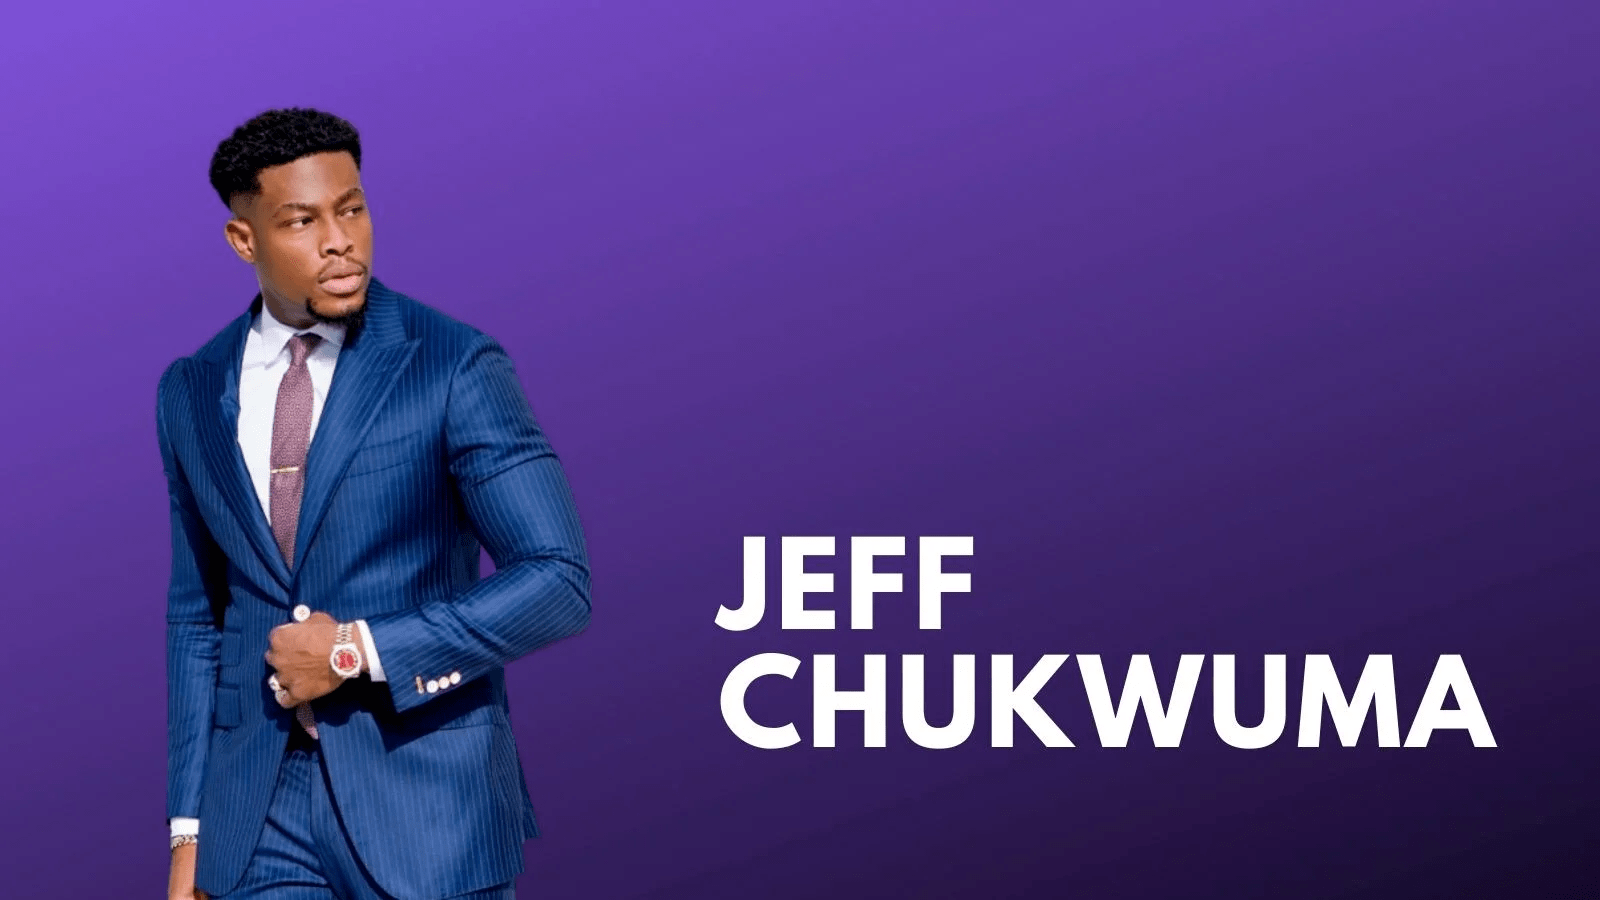 Jeff Caesar Chukwuma